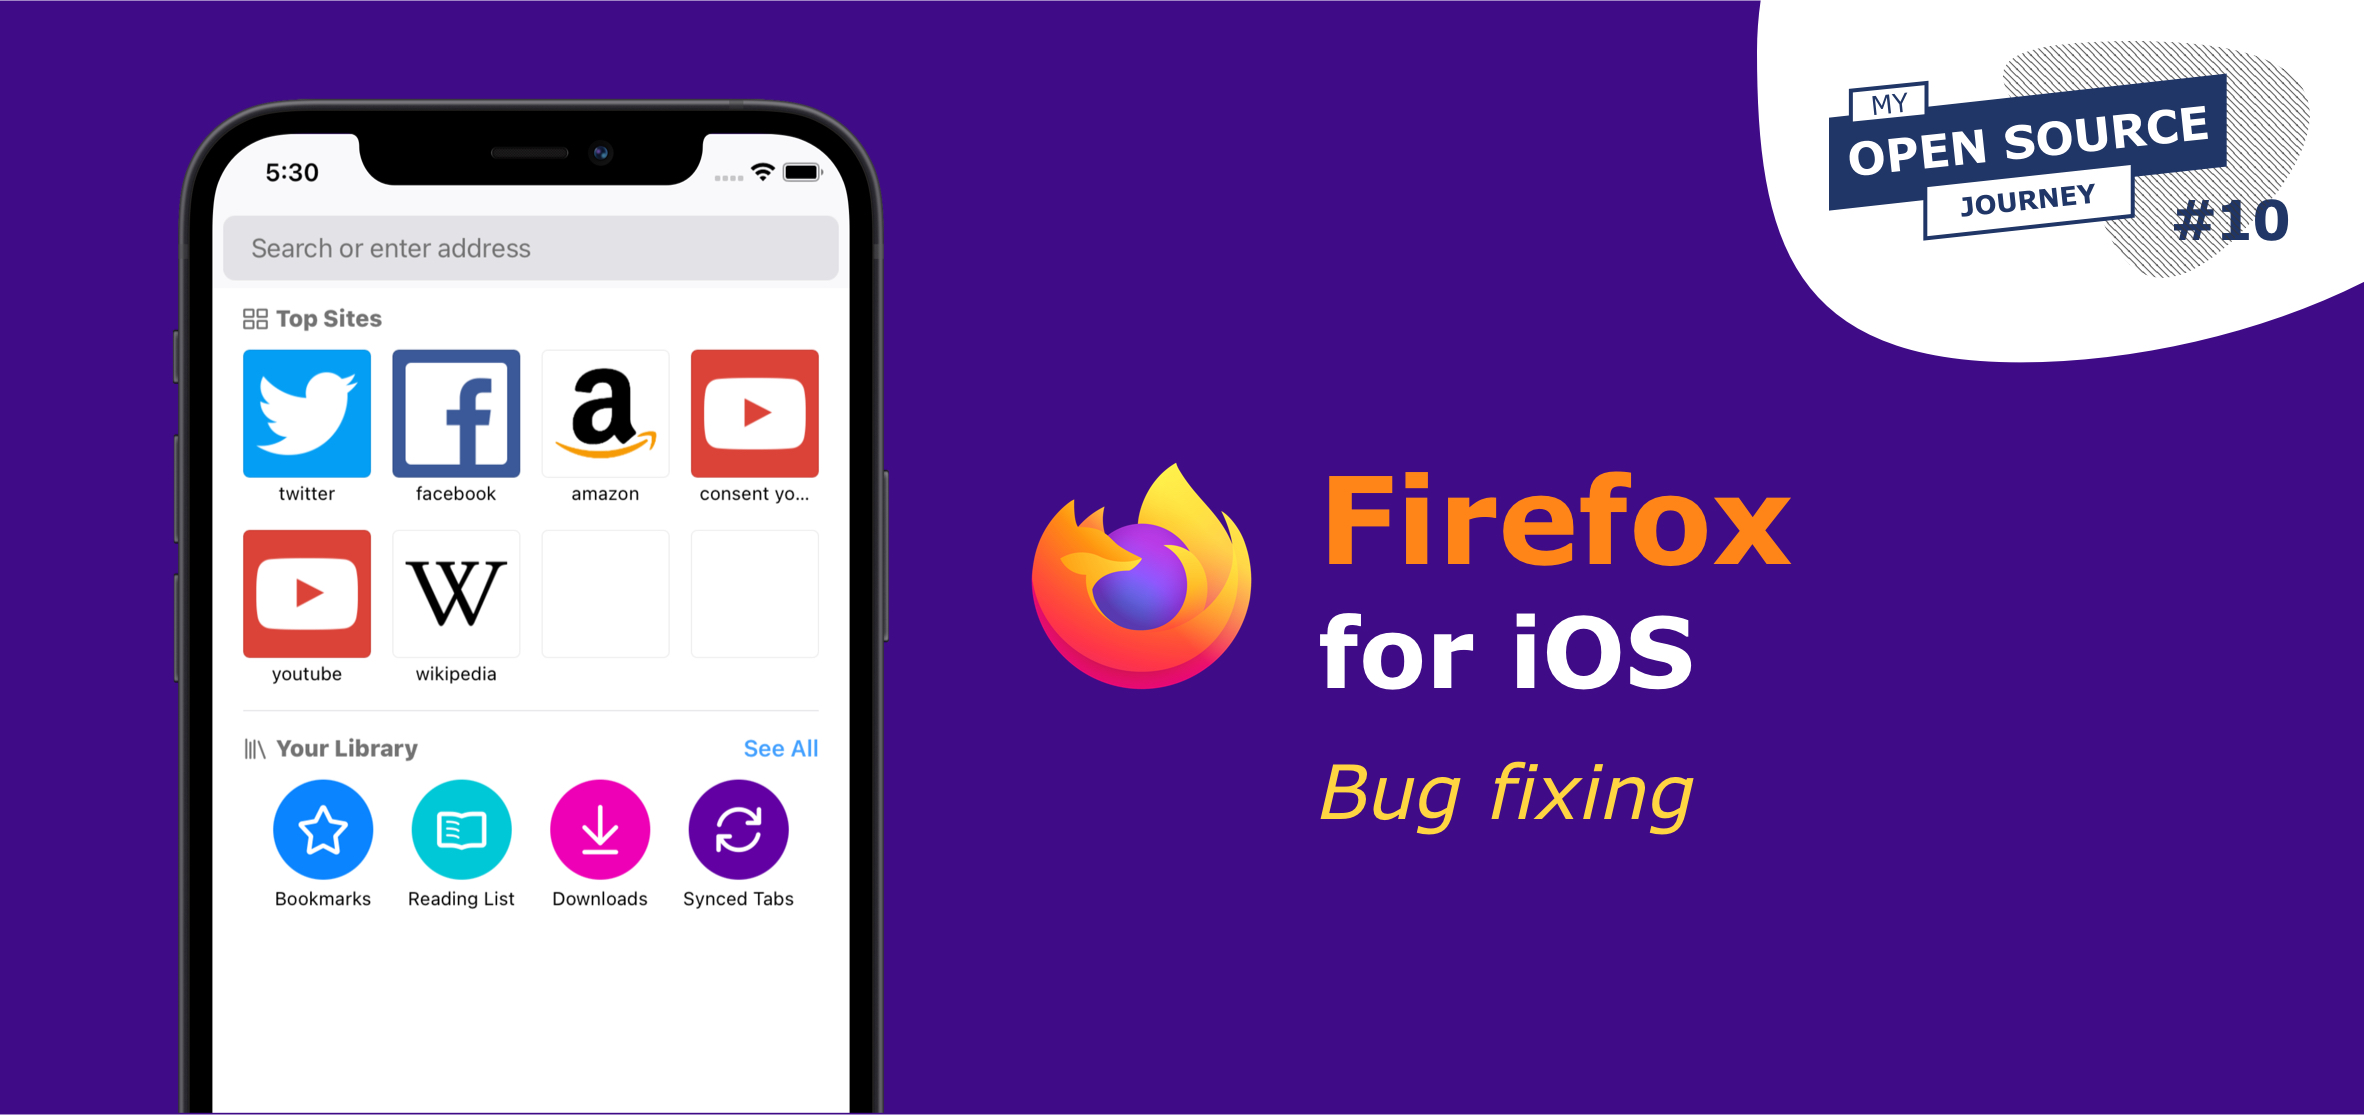 Firefox iOS presentation